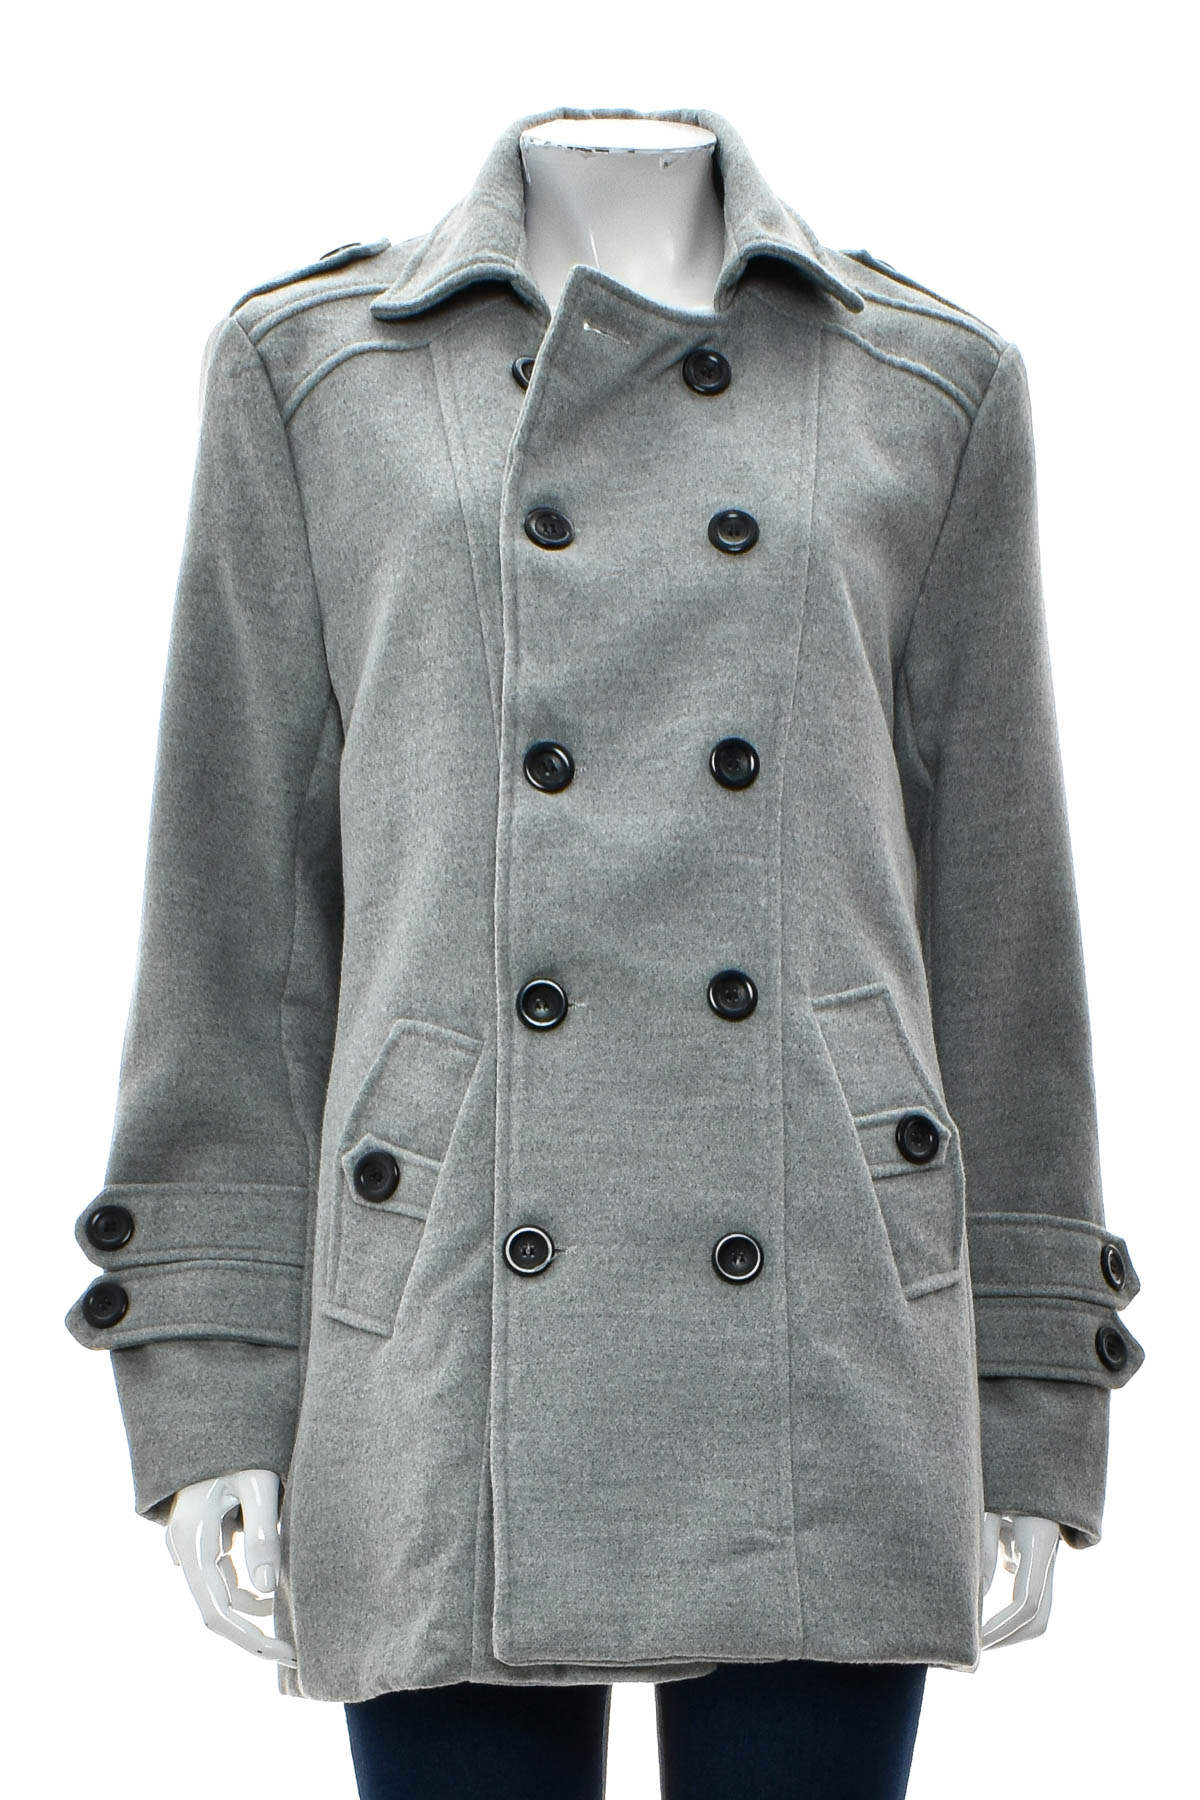 Γυναικείο παλτό - Muxinsole - 0